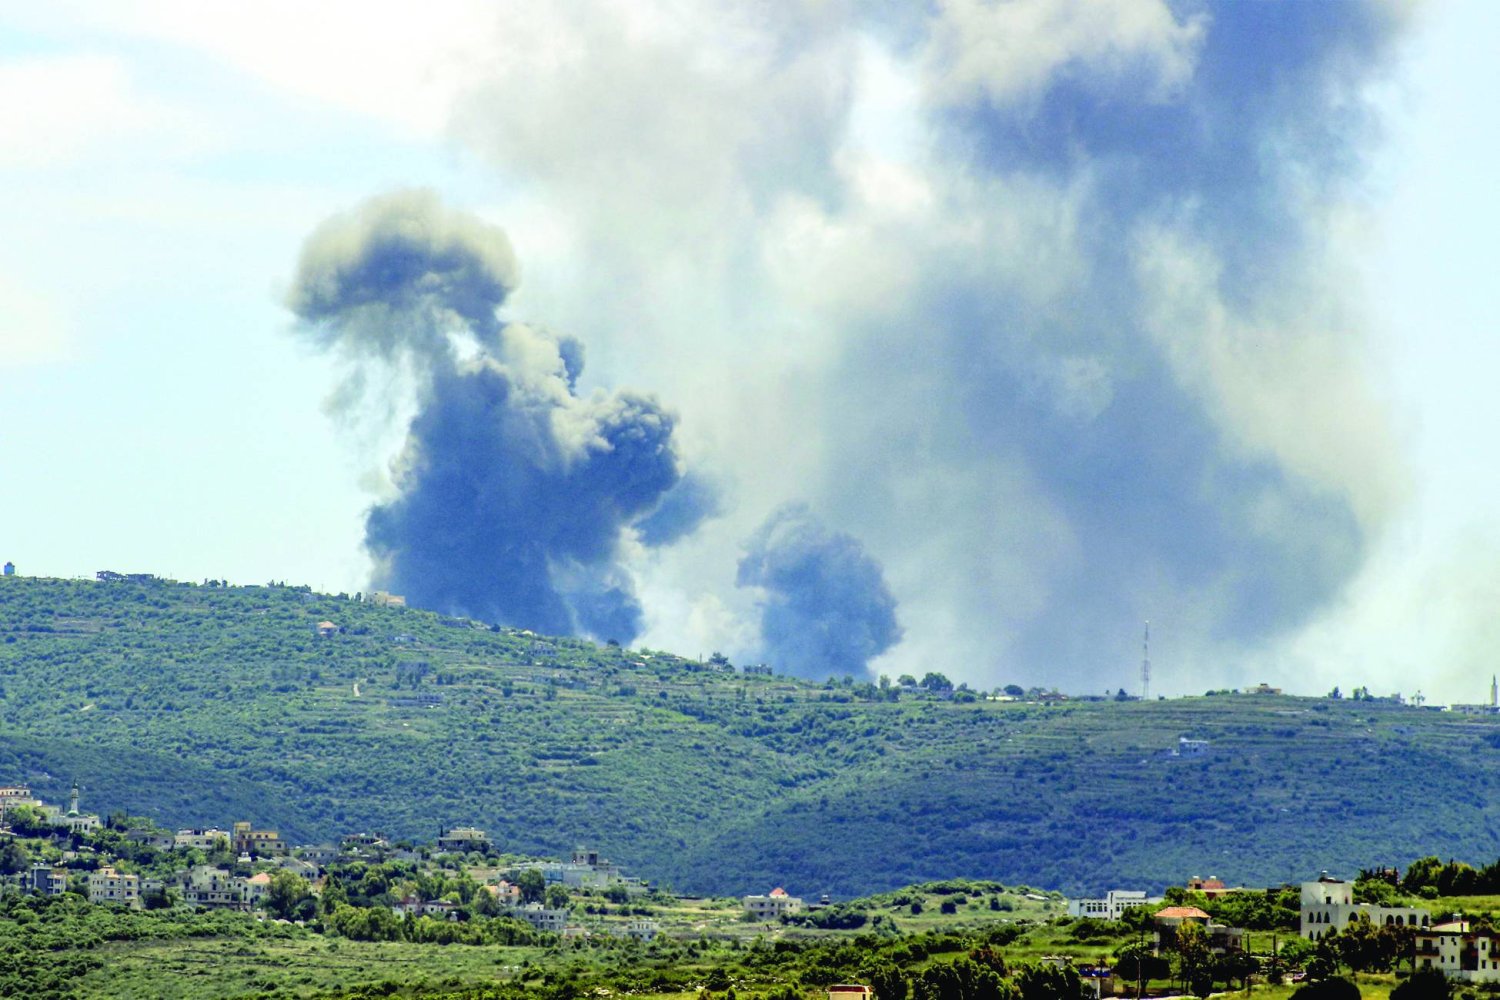 
الدخان يتصاعد نتيجة غارة اسرائيلية استهدفت مروحين جنوب لبنان (أ.ف.ب)